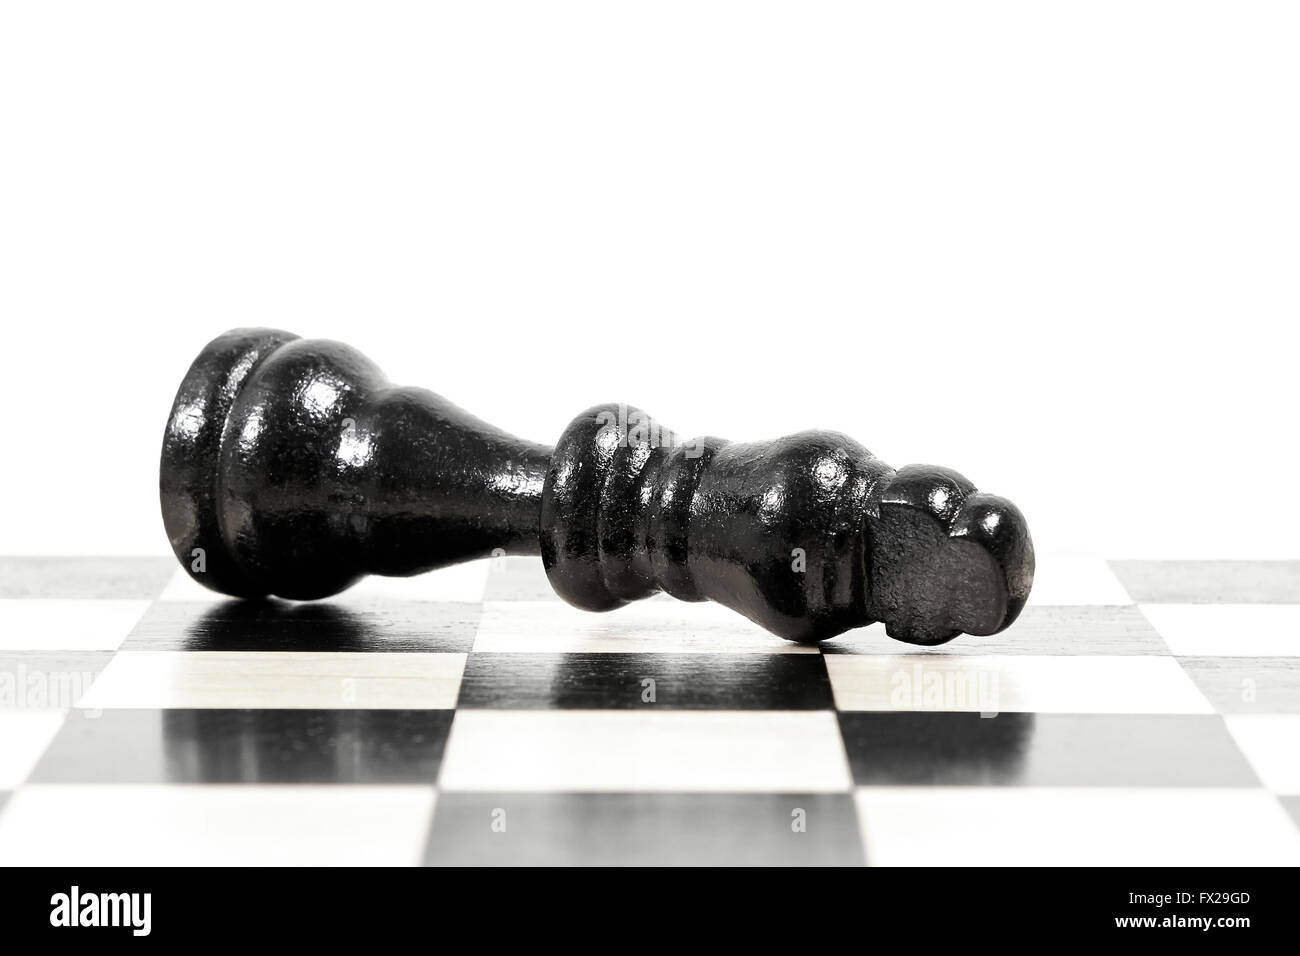 Gefallenen König in ein Schach-Spiel zeigt Spiel vorbei Stockfoto